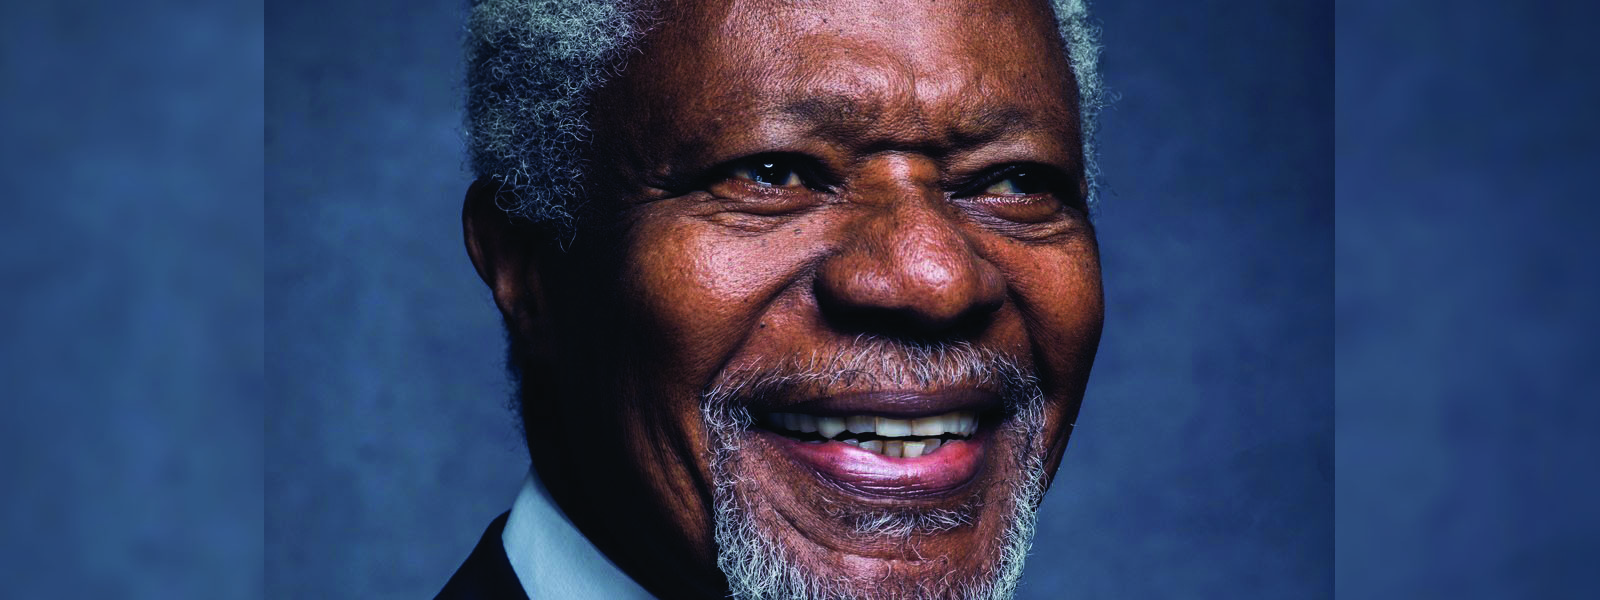 Former UN Secretary-General, Kofi Annan dies